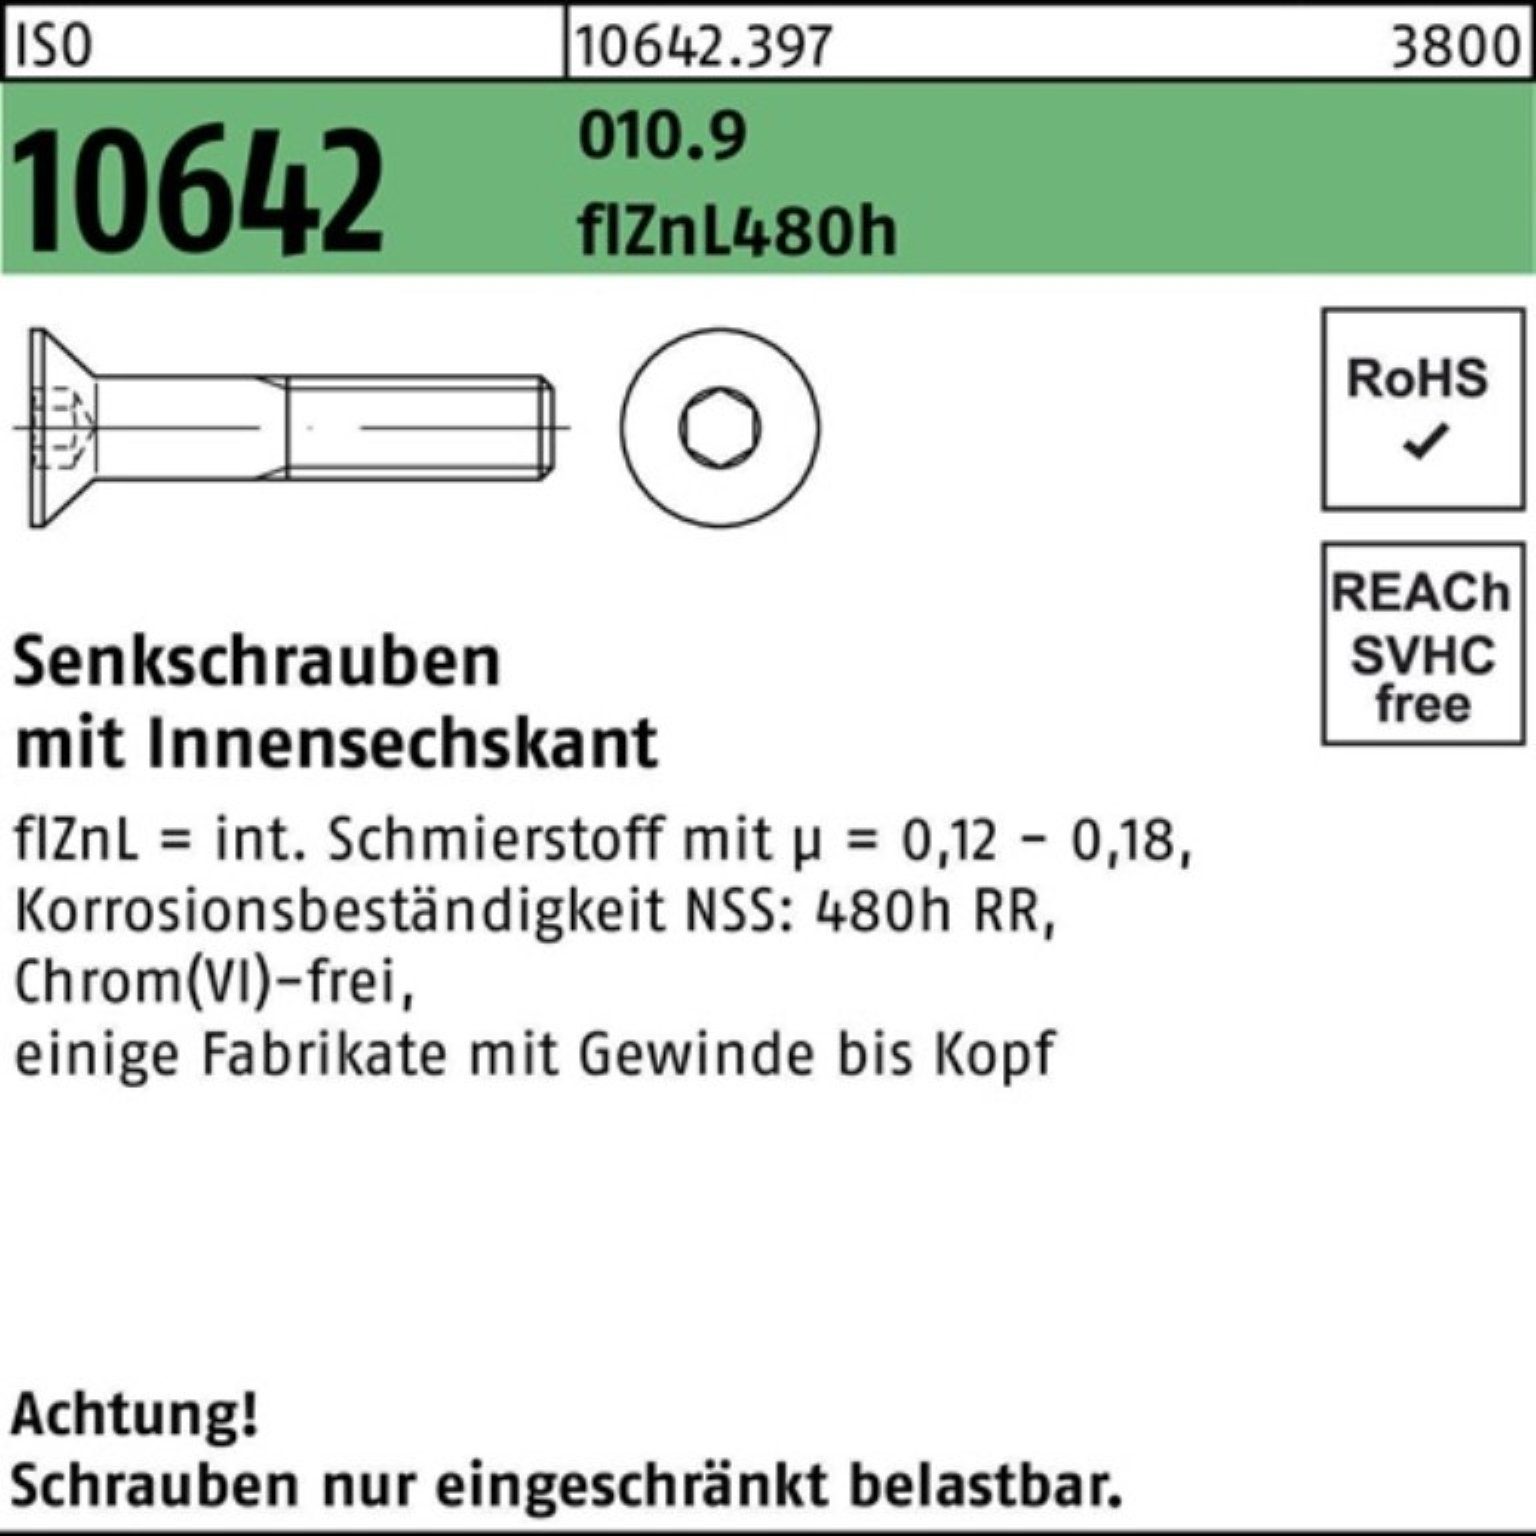 Reyher Senkschraube 200er Pack Senkschraube ISO 10642 Innen-6kt M10x25 010.9 flZnL 480h zi